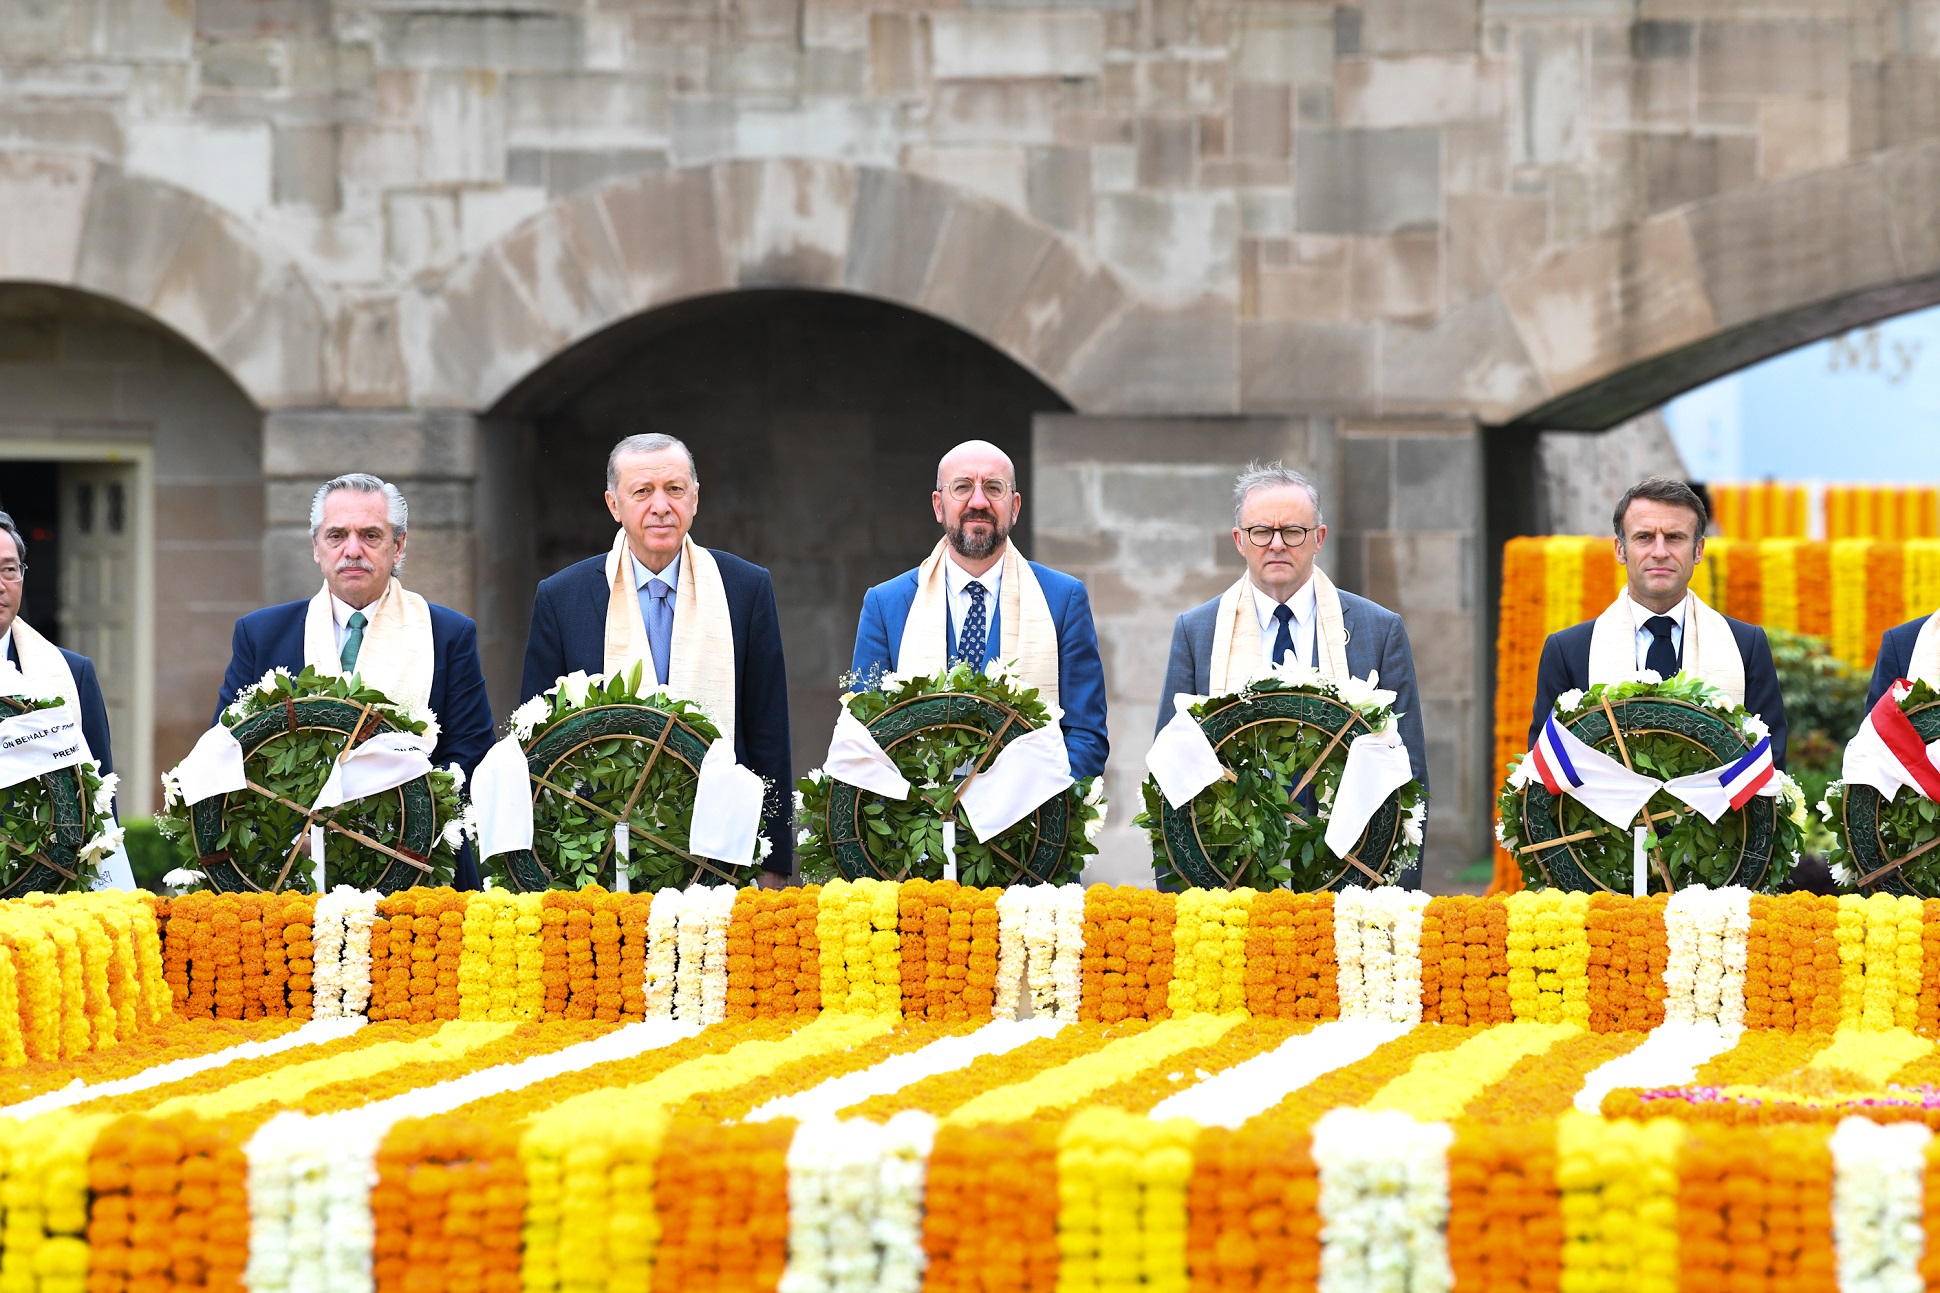 El presidente participó de un homenaje a Mahatma Gandhi junto a líderes y lideresas del G20